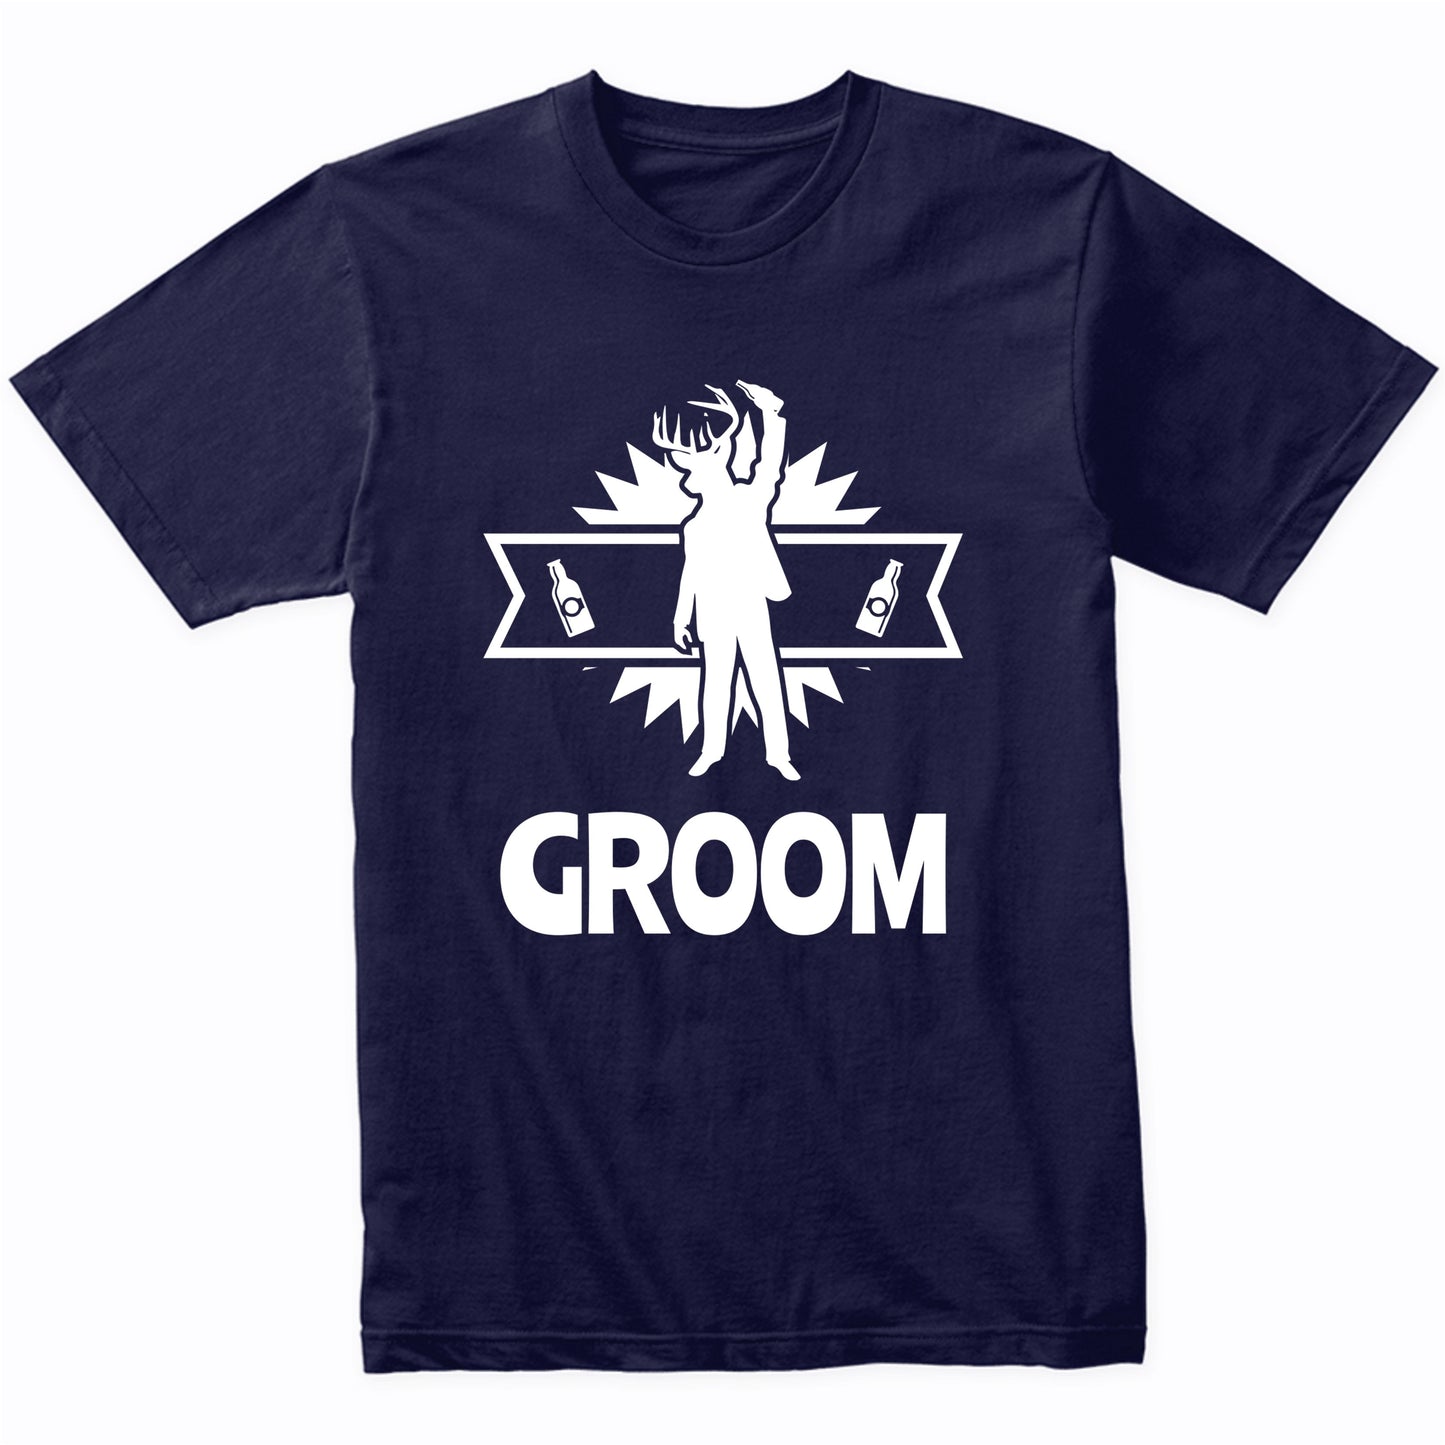 Groom Shirt - Bachelor Party Wedding Shirt